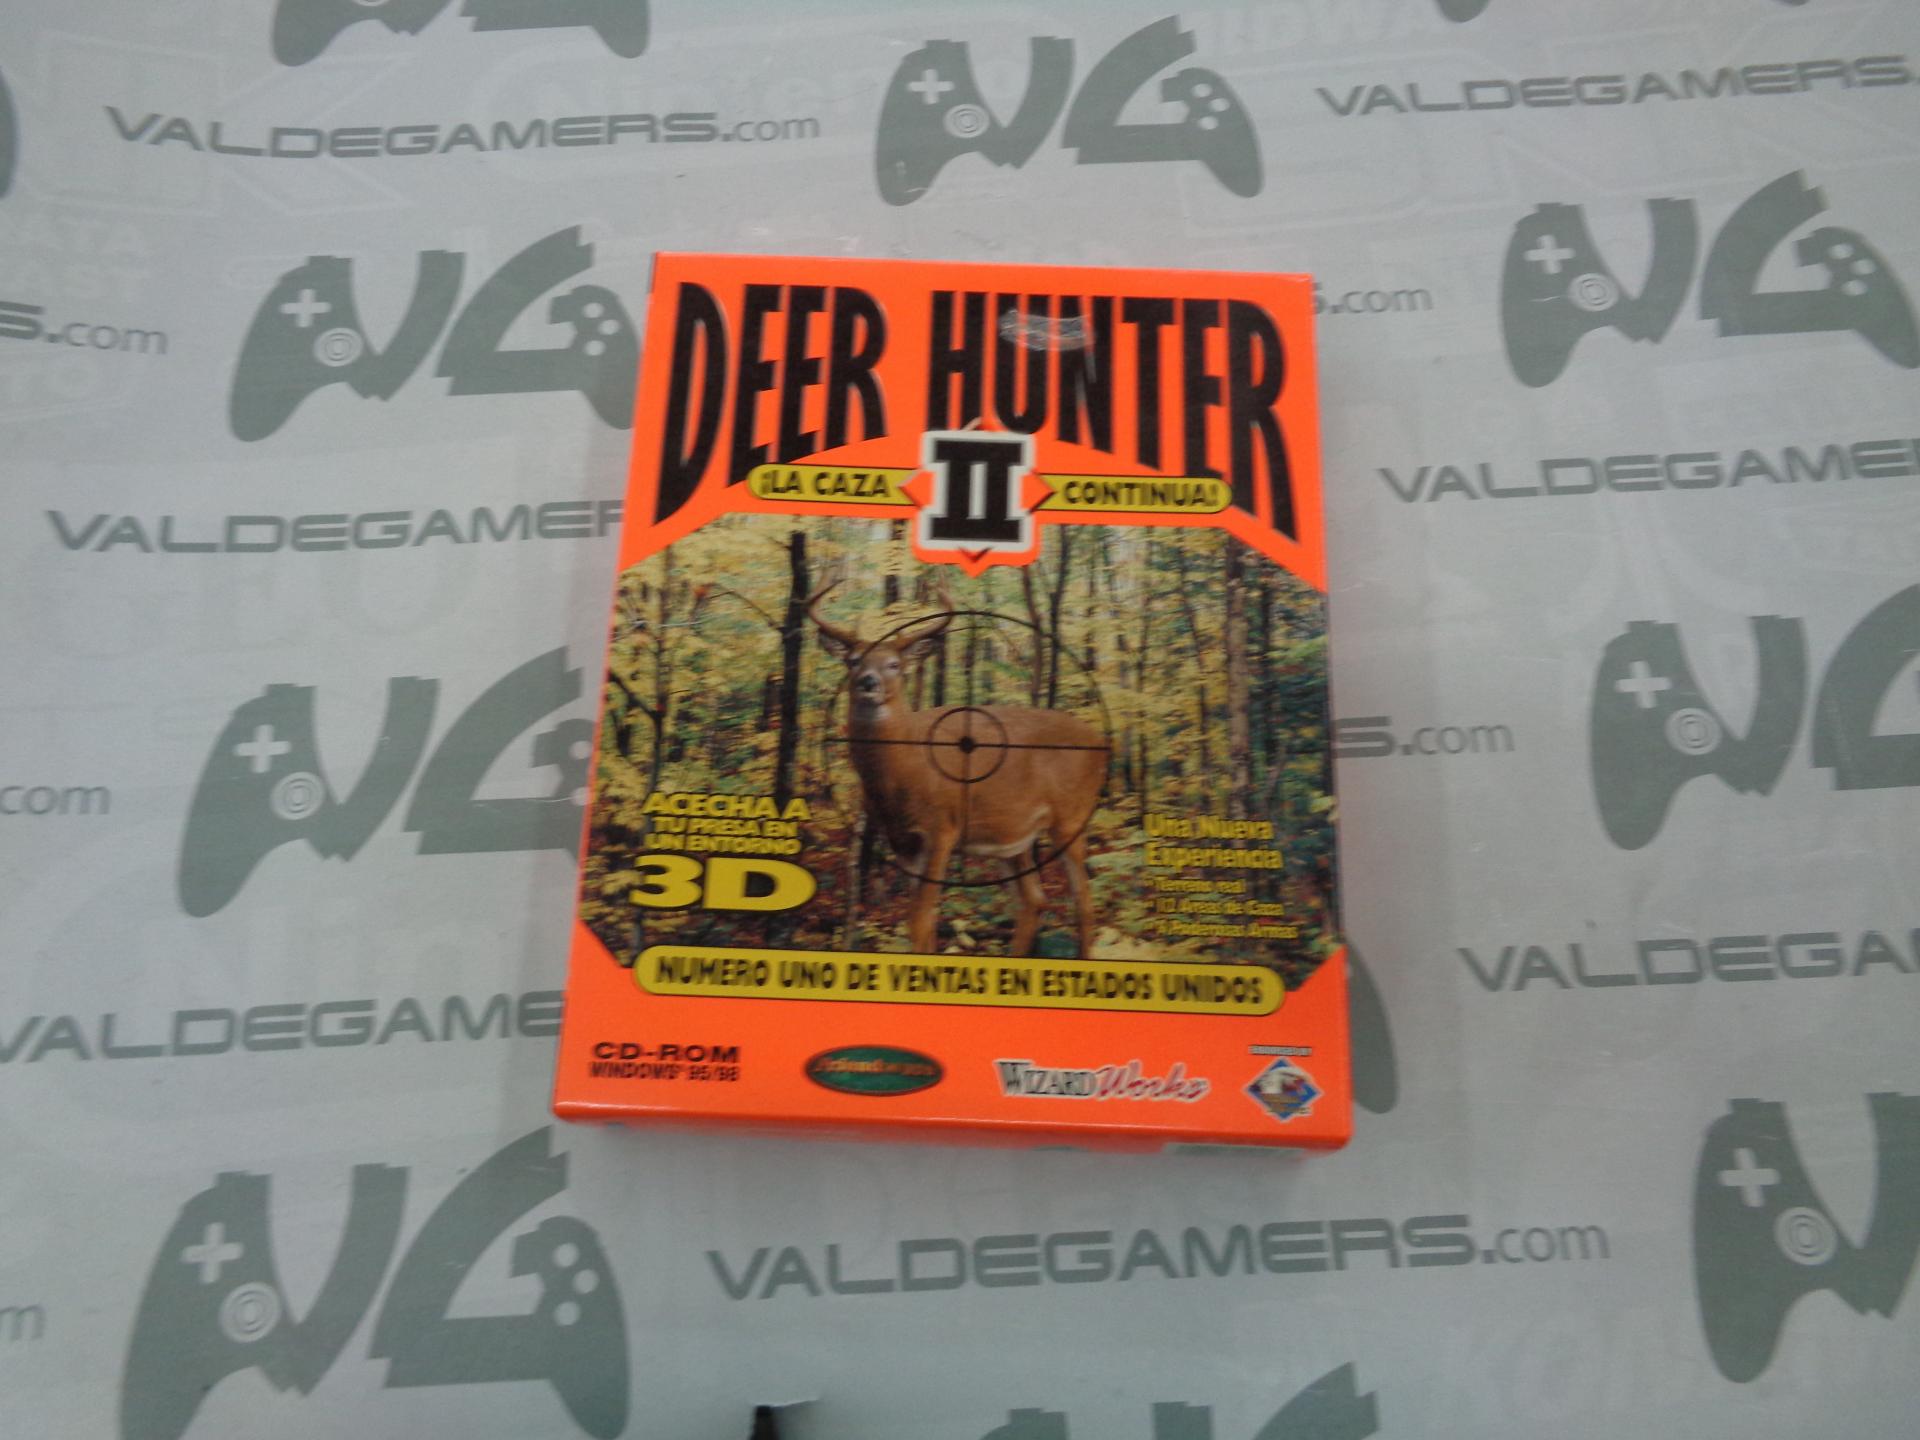 Deer hunter 2